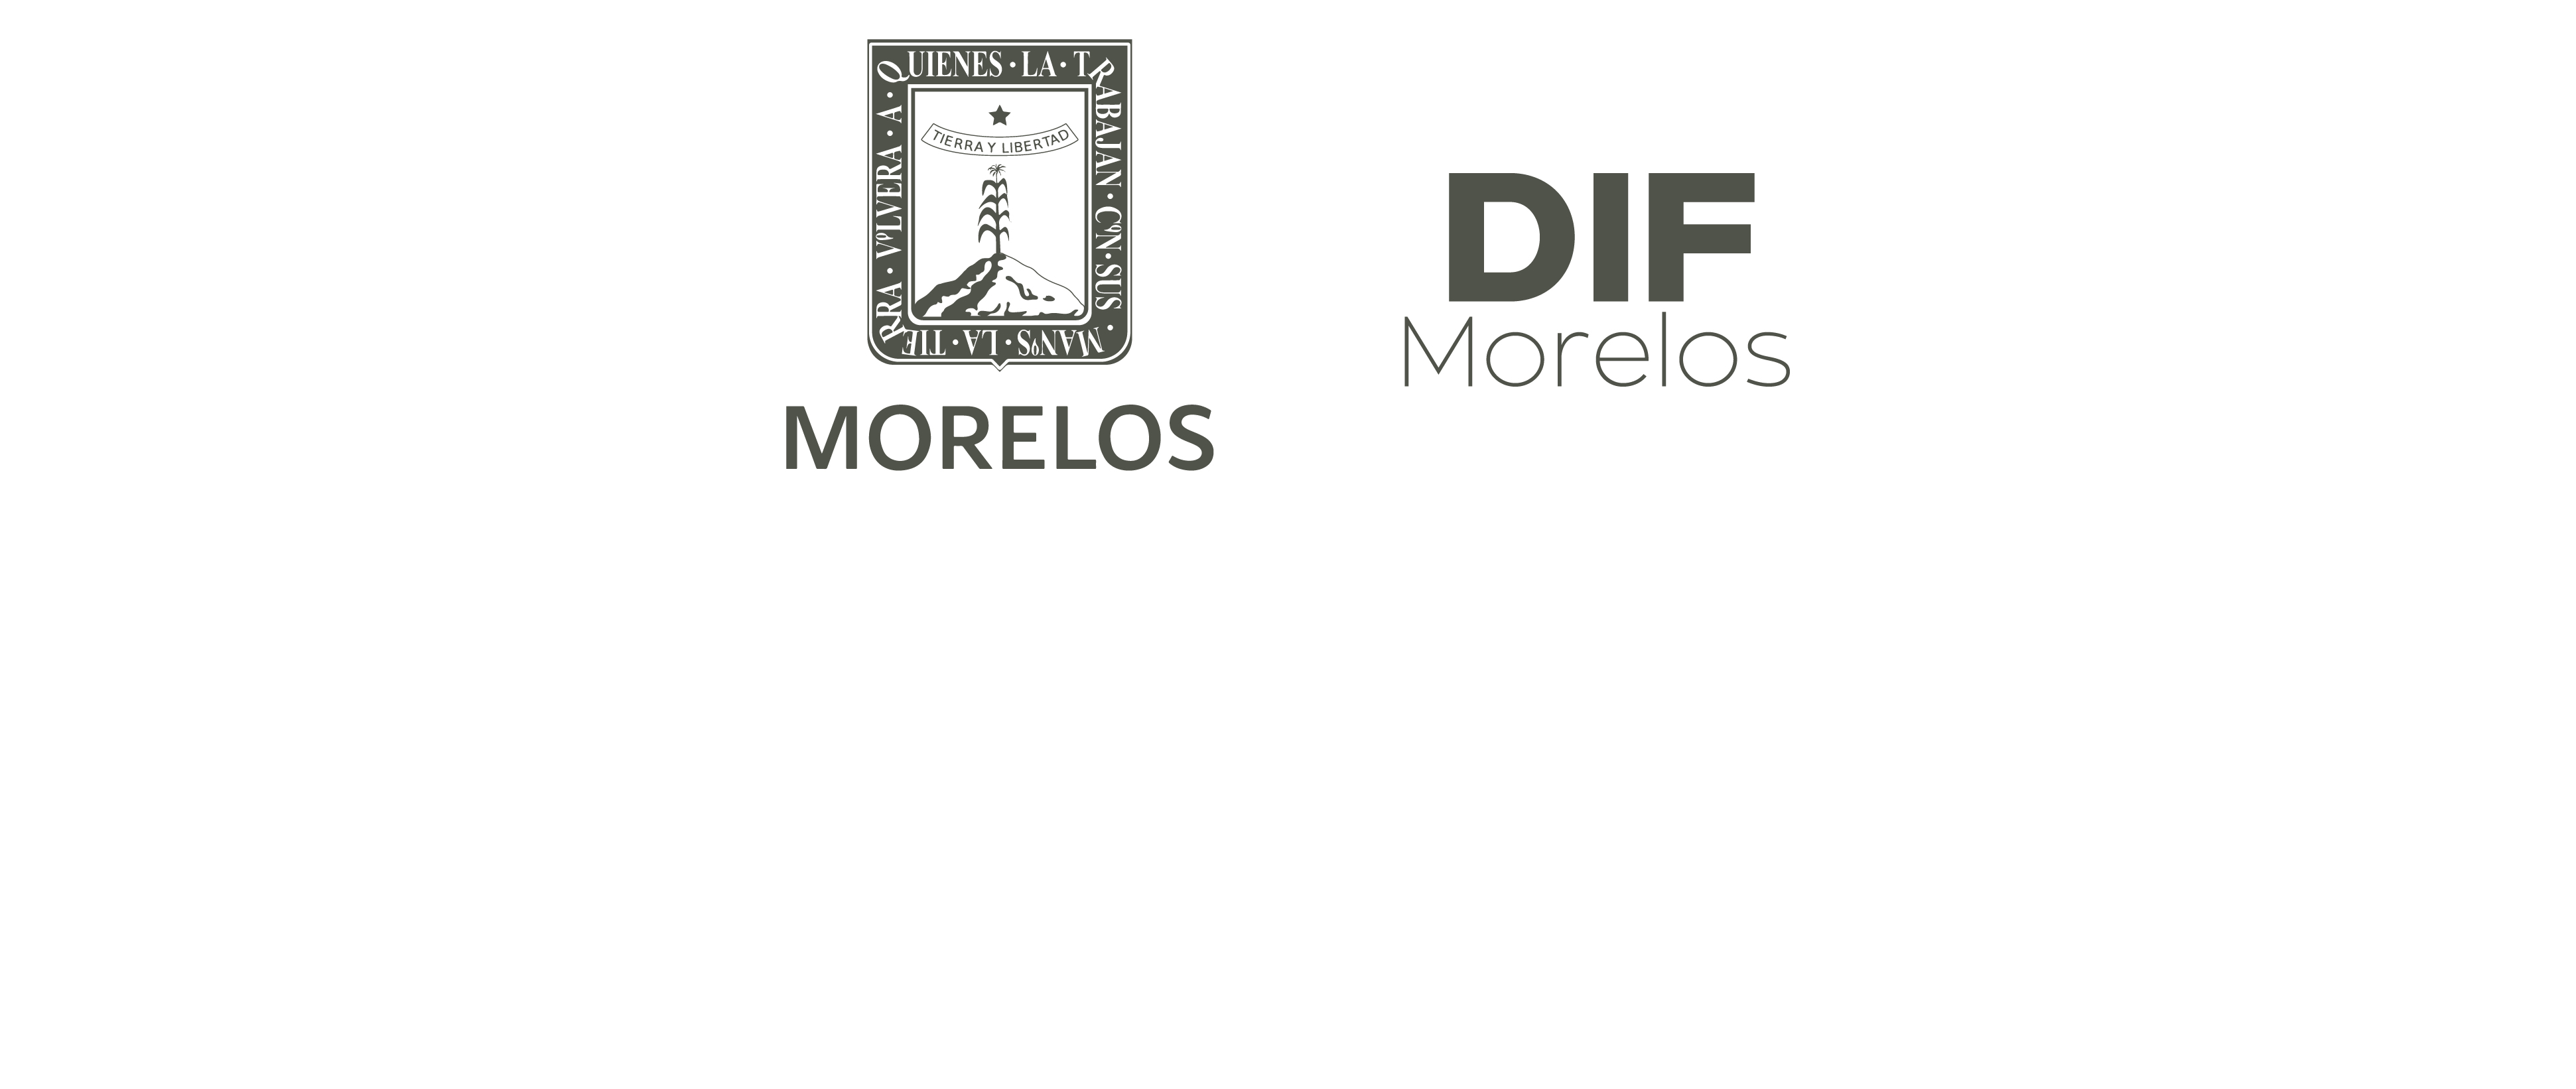 Sistema DIF Morelos